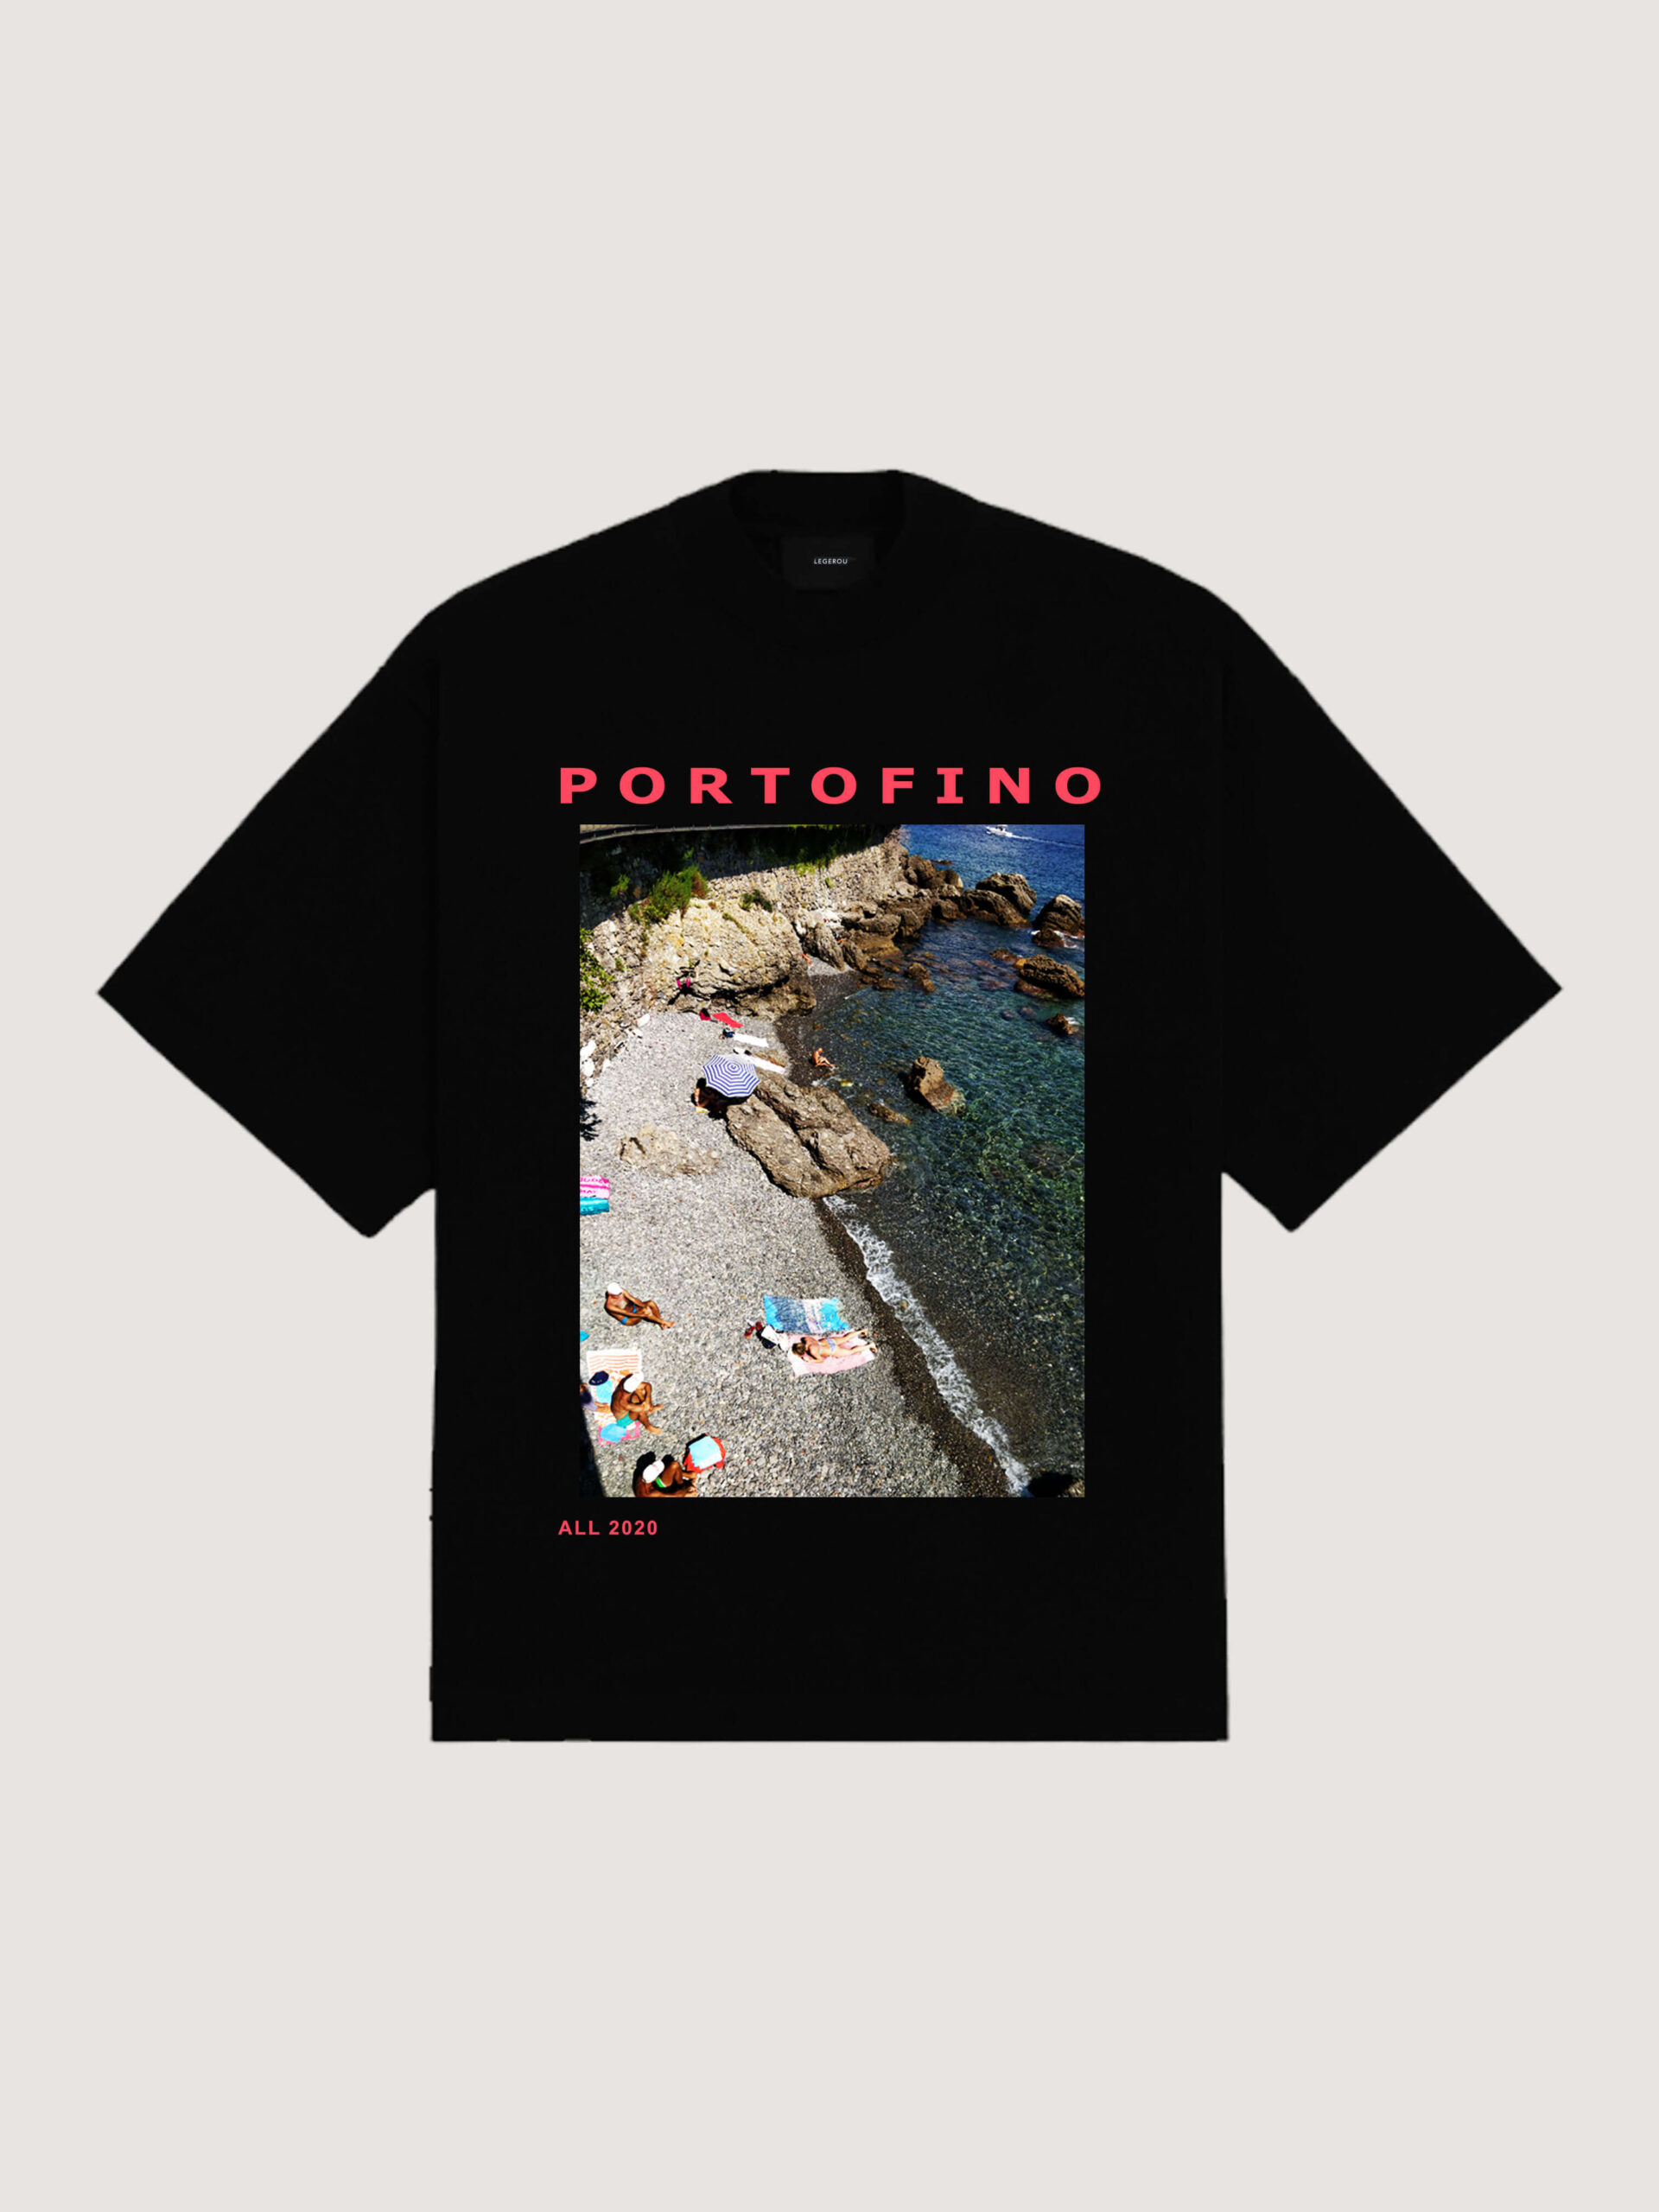 'Portofino'